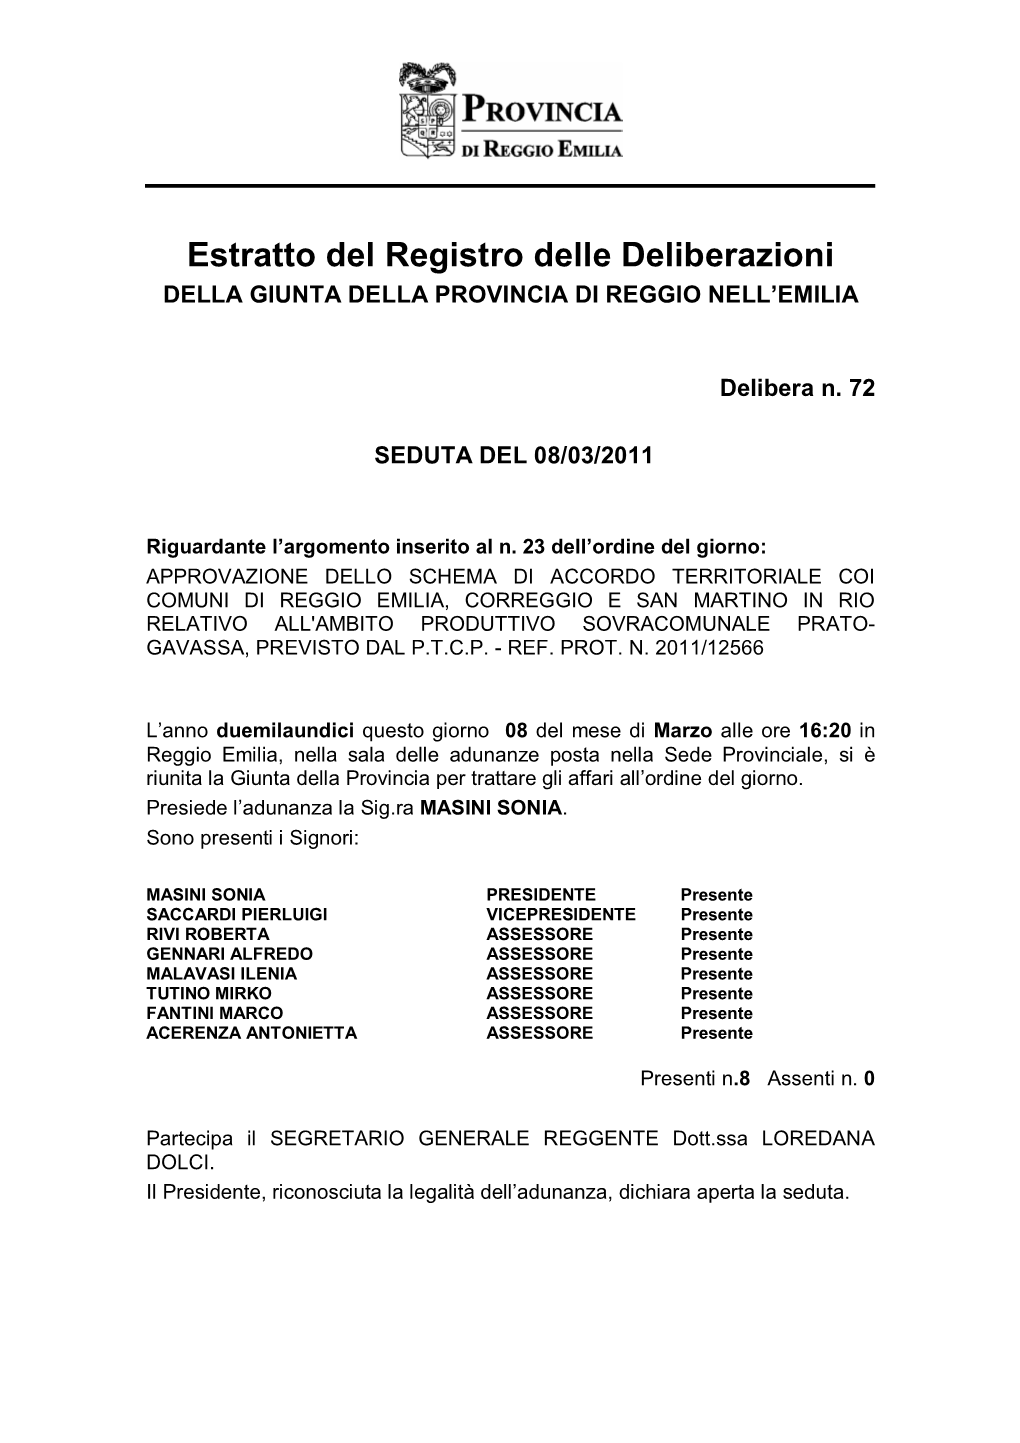 Accordo Territoriale Prato Gavassa